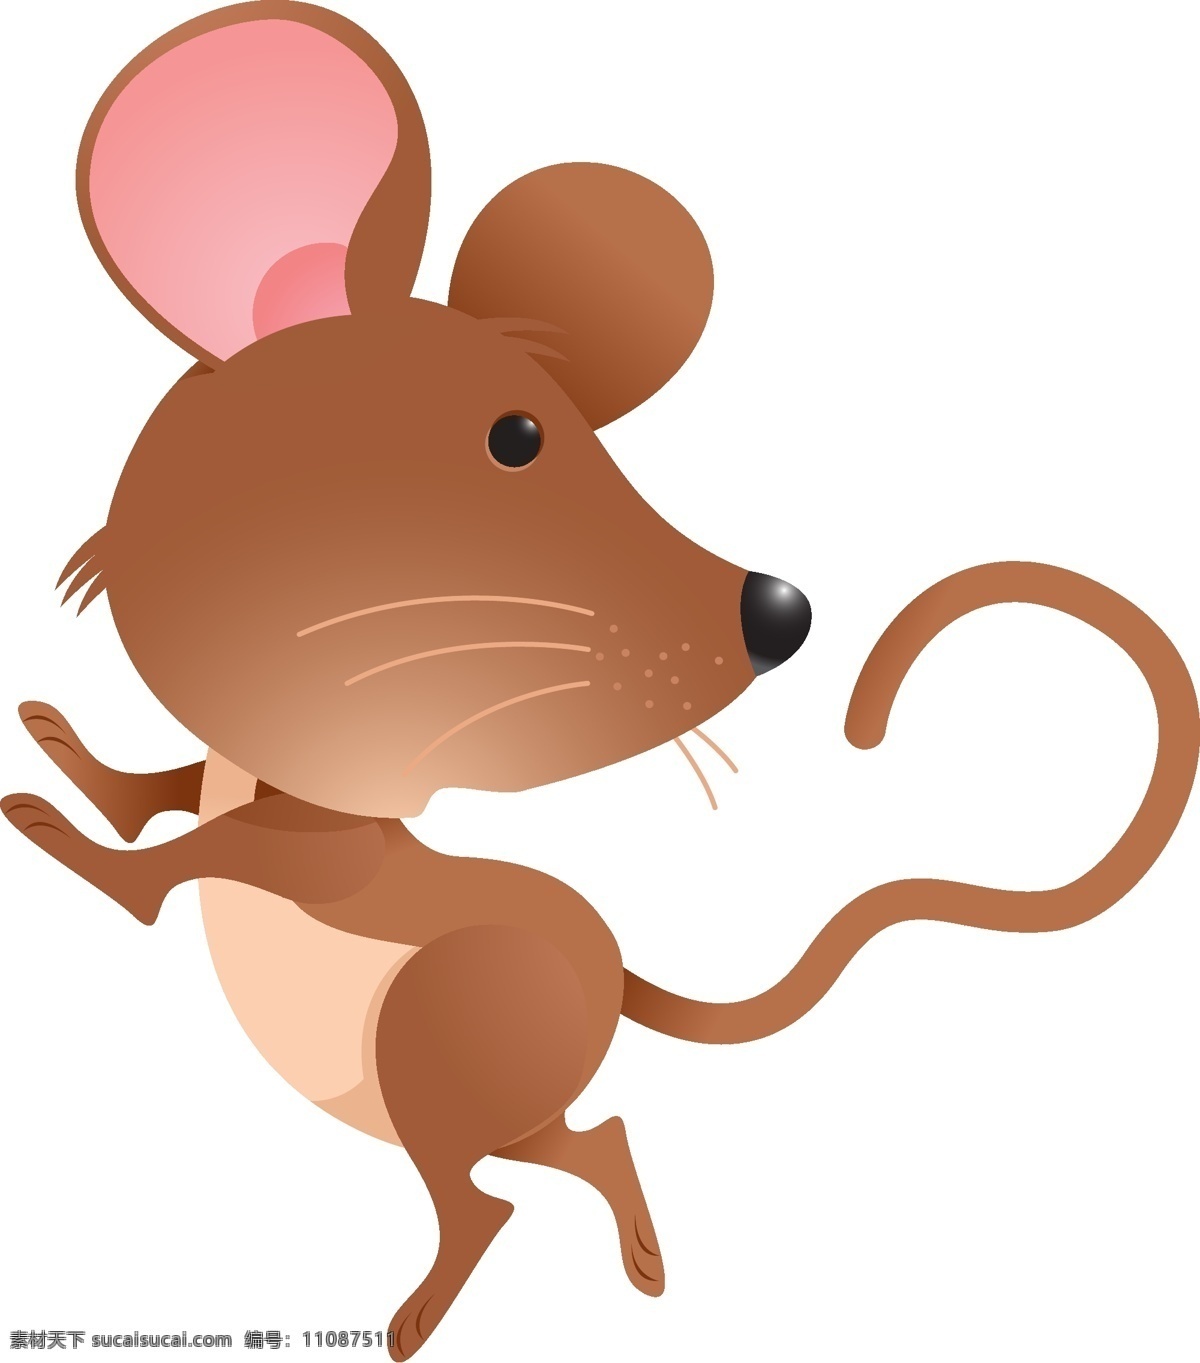 卡通老鼠 老鼠卡通 老鼠 卡通鼠 可爱老鼠 卡通系列 十二生肖 动物矢量 卡通设计